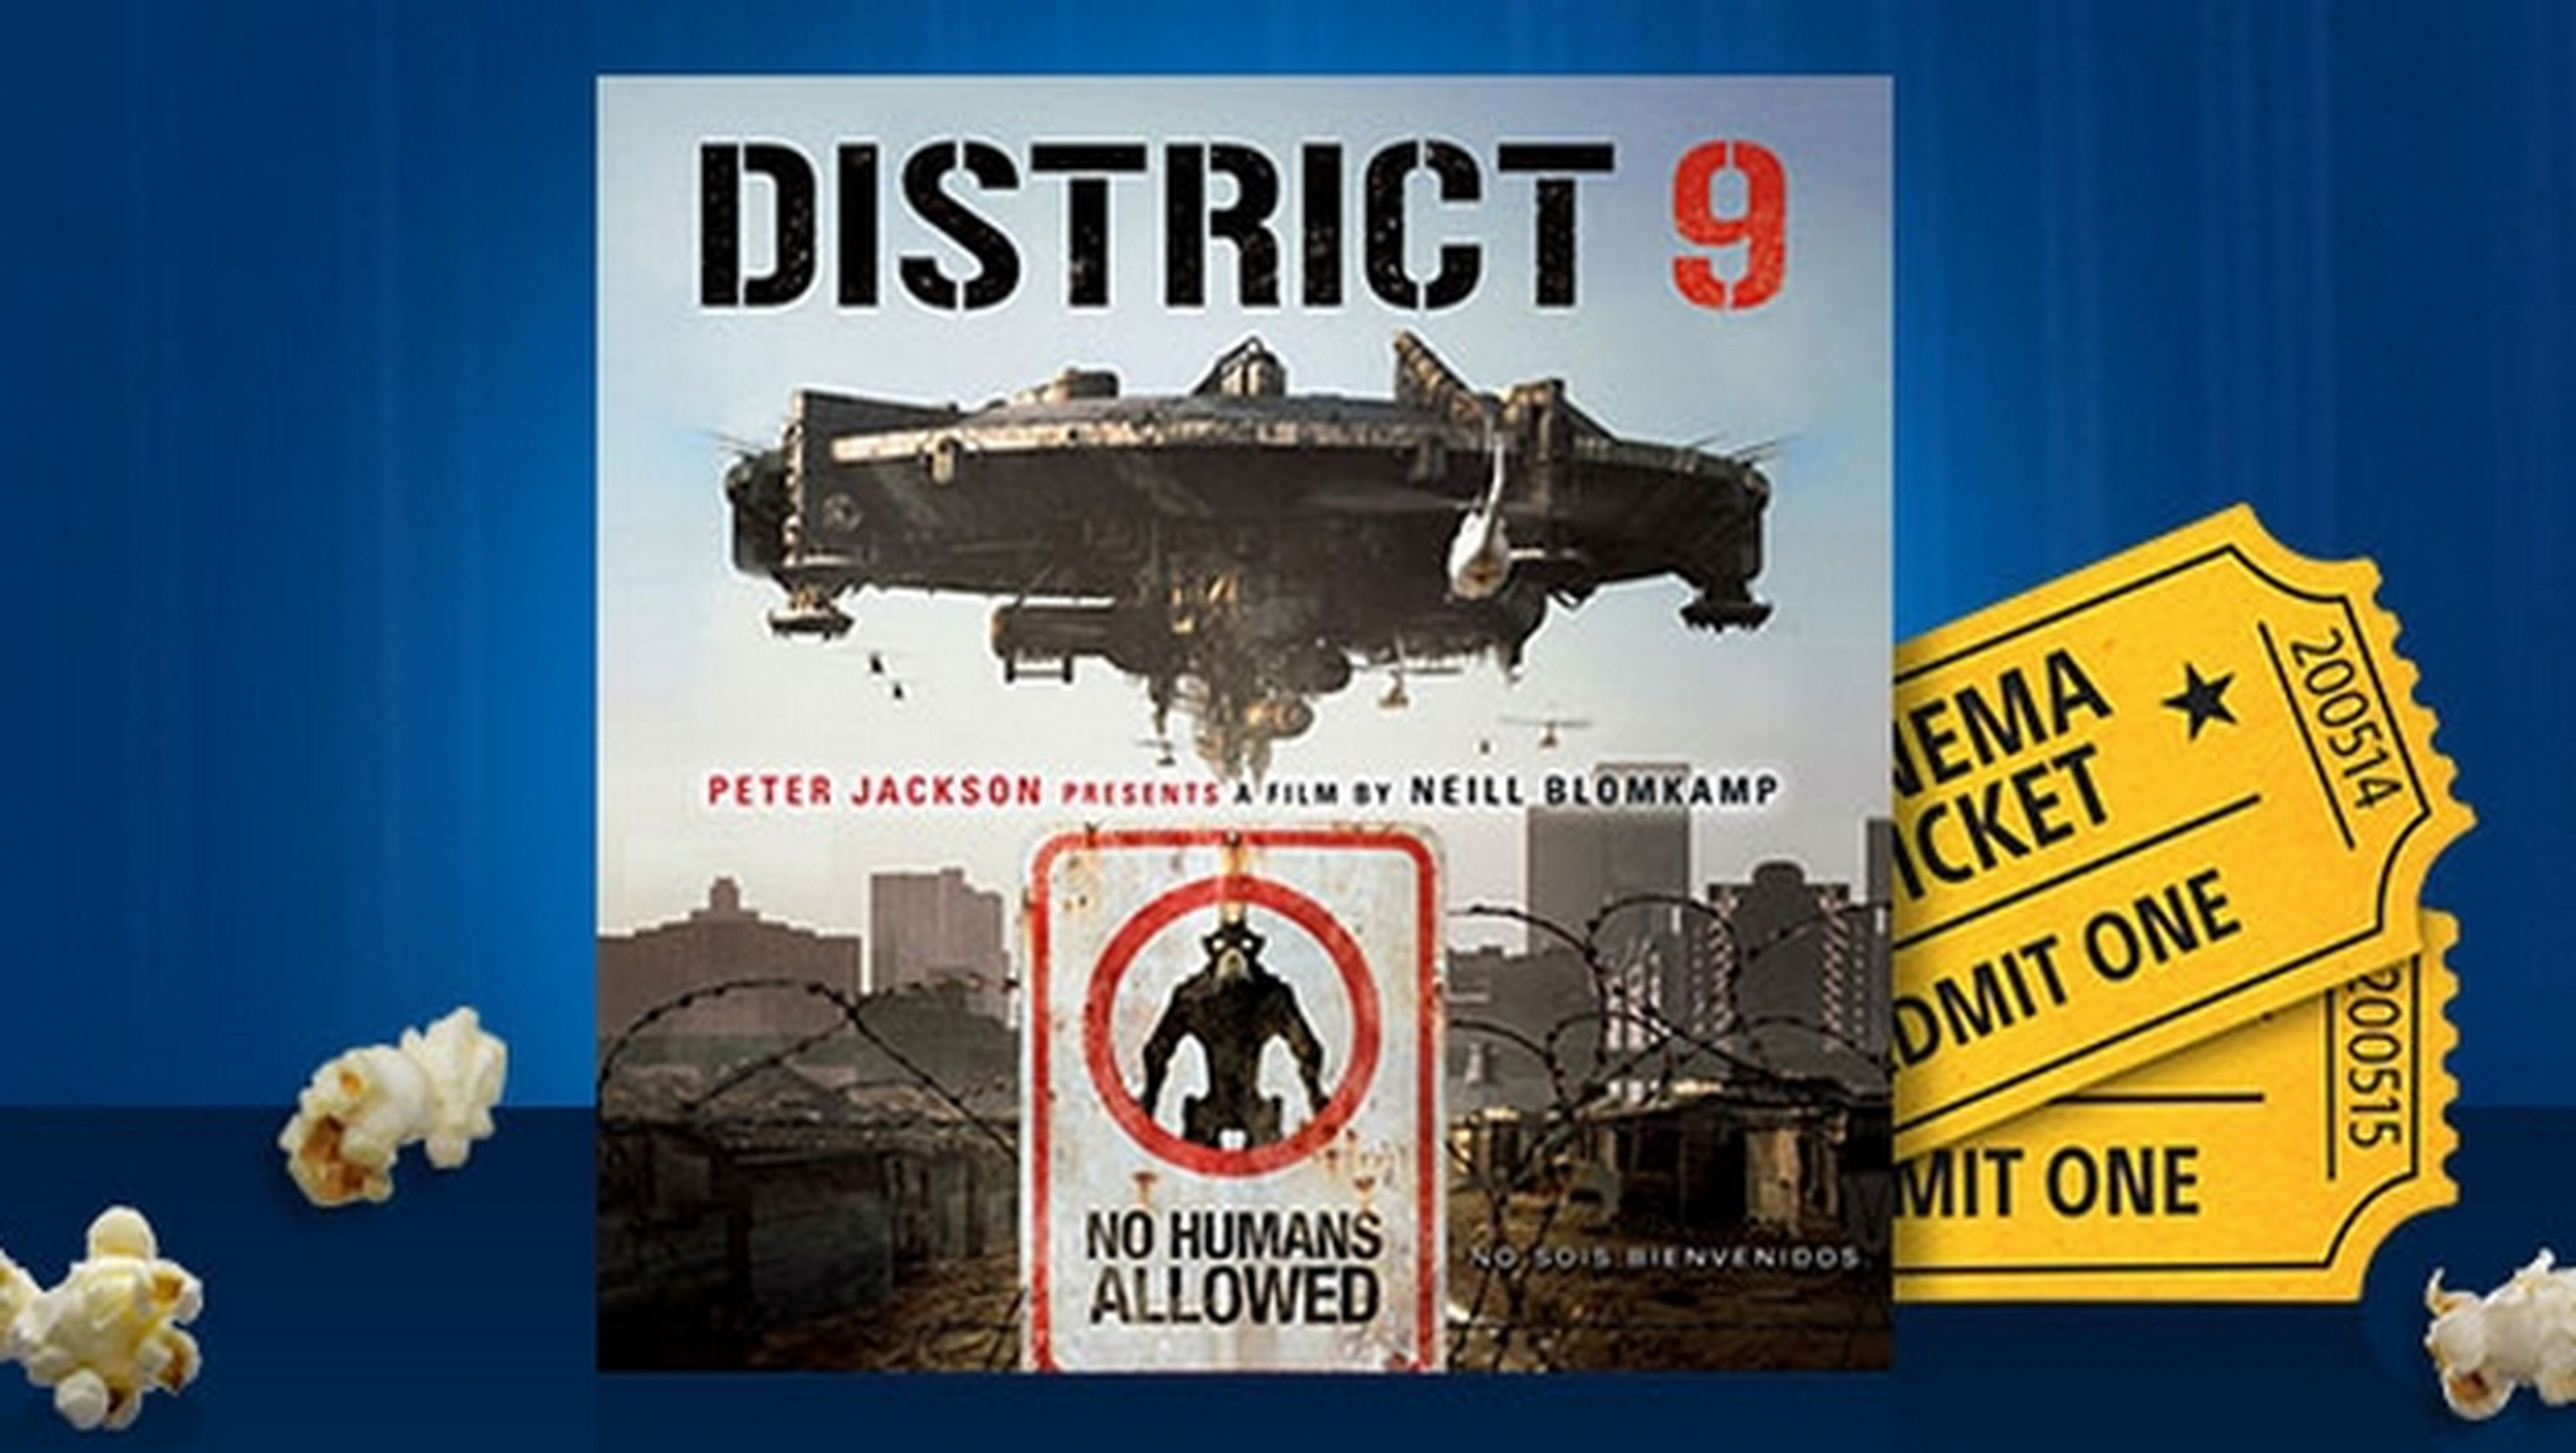 Sony ofrece la película District 9 gratis si realizas cualquier compra de películas o juegos en PlayStation Store.